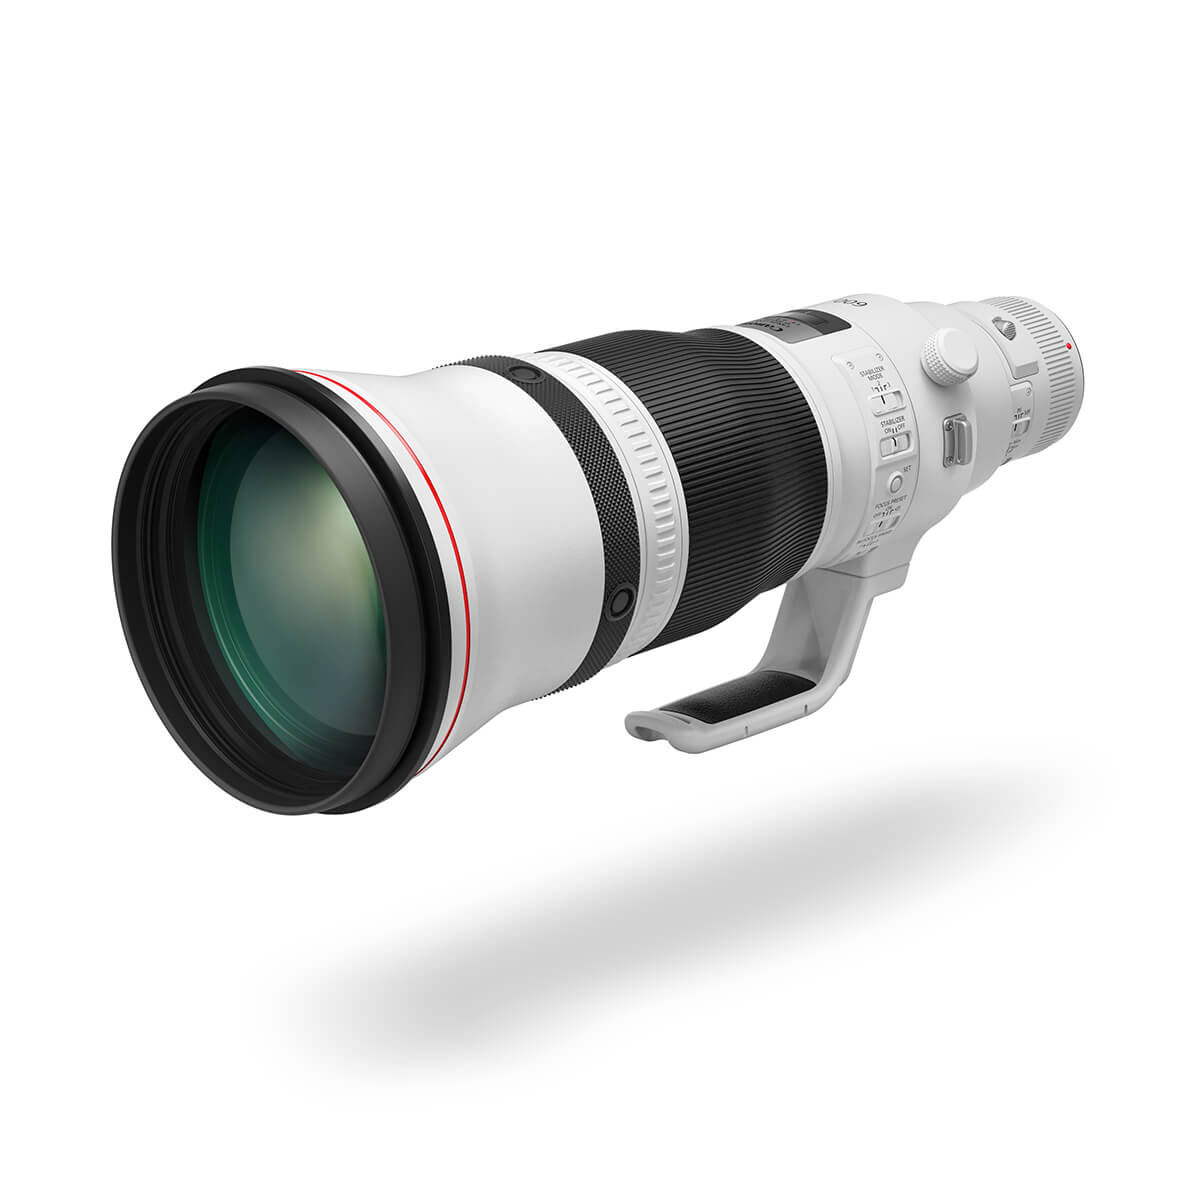 EF-M 55-200mm f/4.5-6.3 IS STM lens